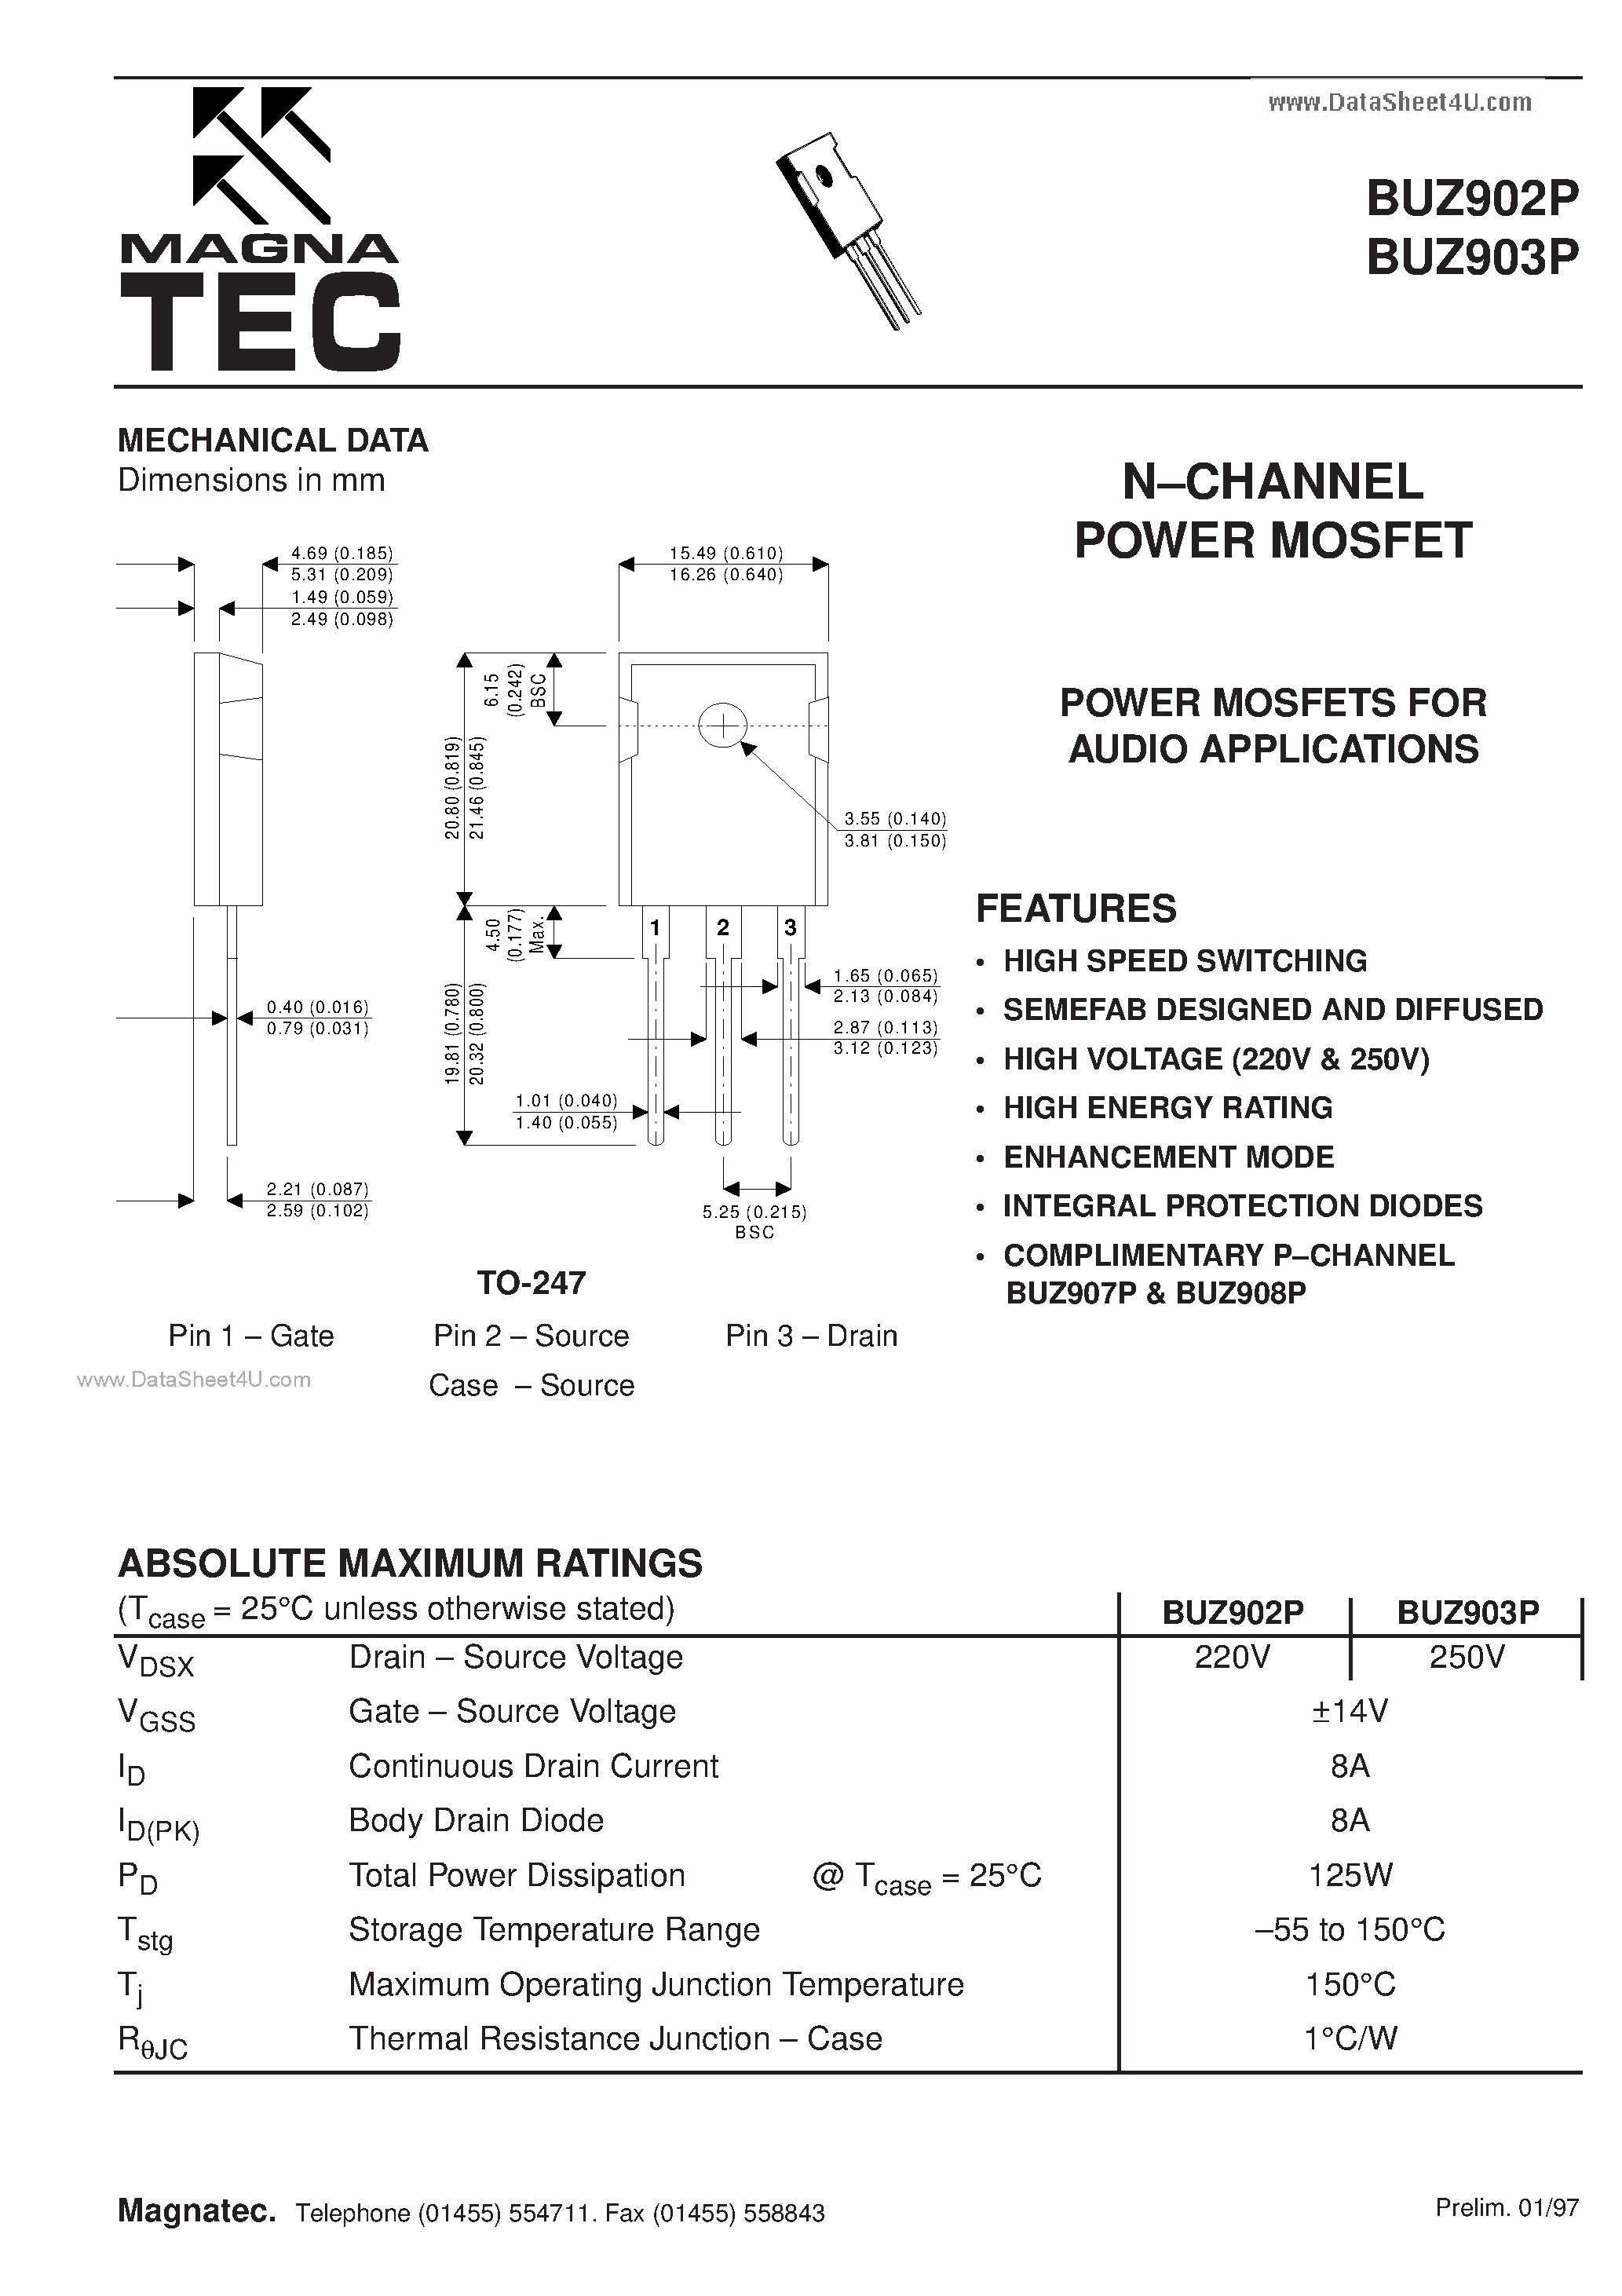 Даташит BUZ902P - (BUZ902P / BUZ903P) N CHANNEL POWER MOSFET страница 1